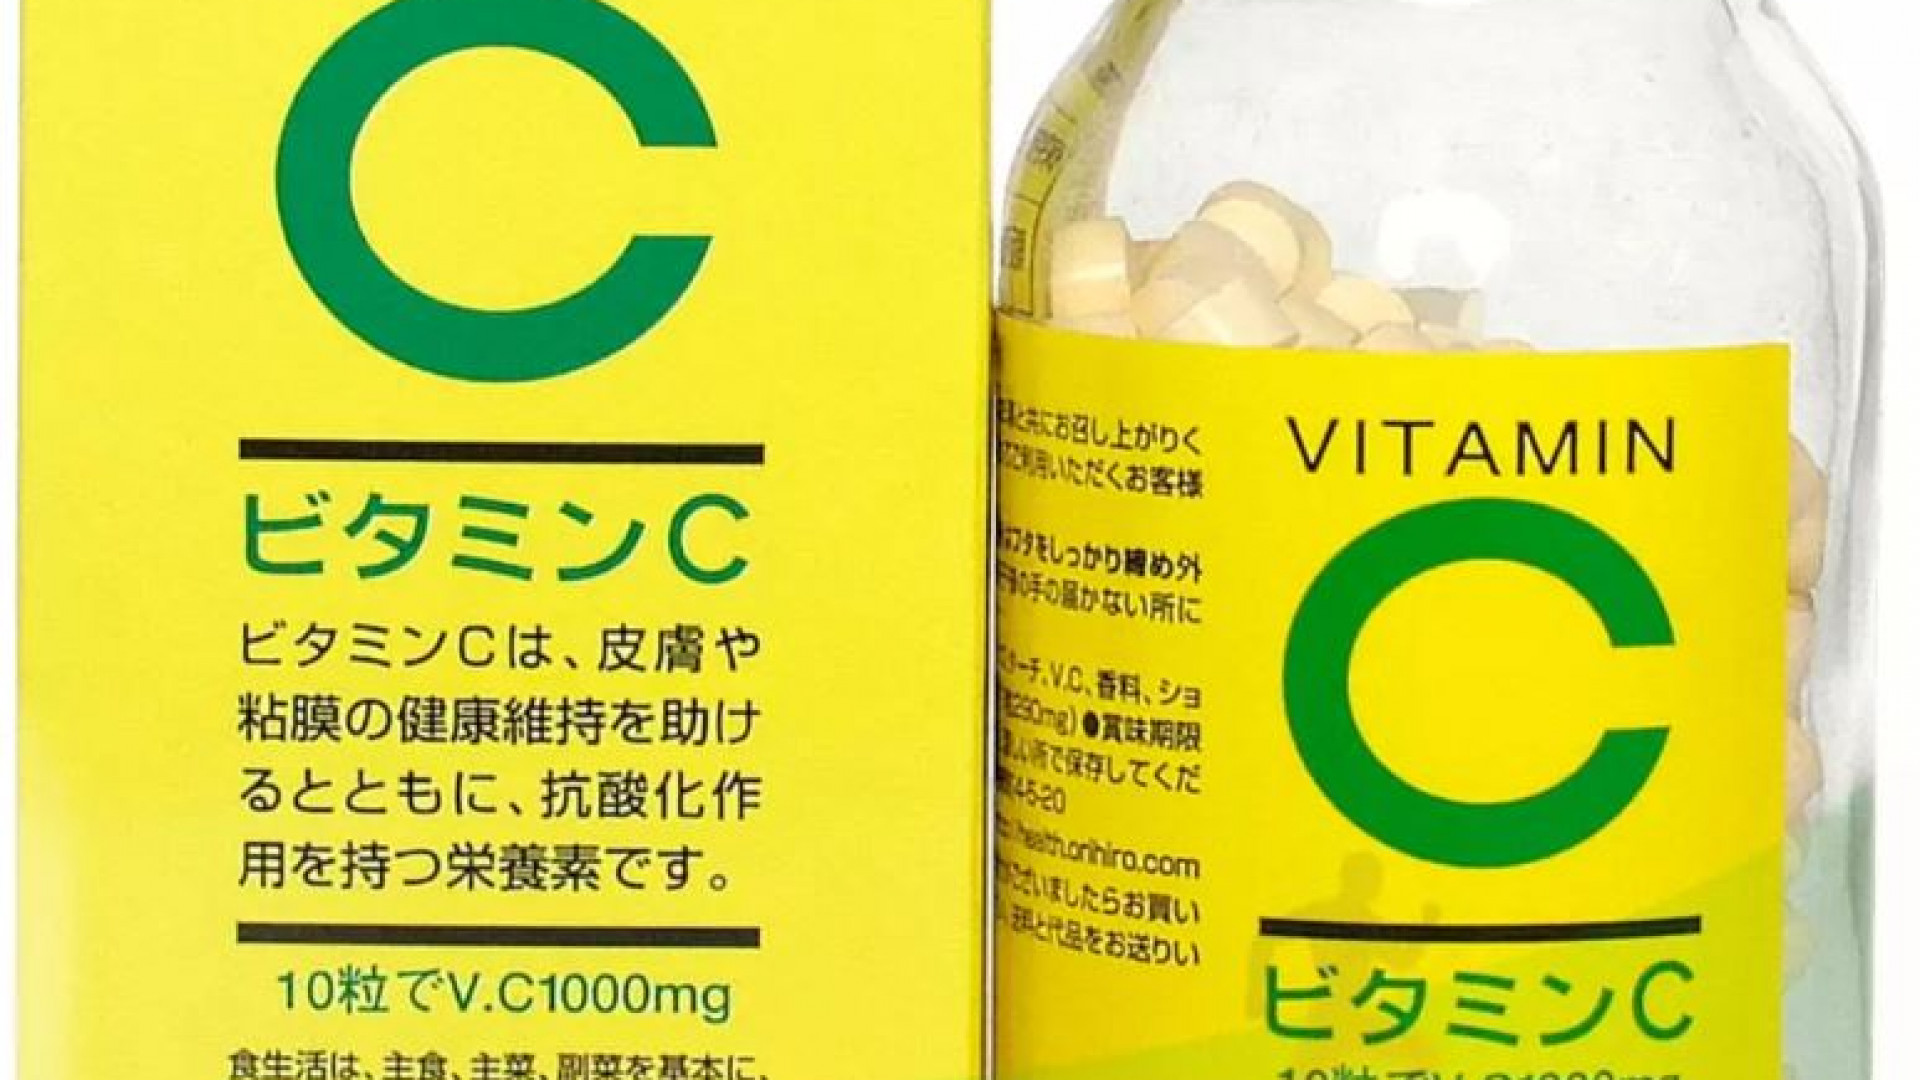 Orihiro Vitmina C 300 comprimate